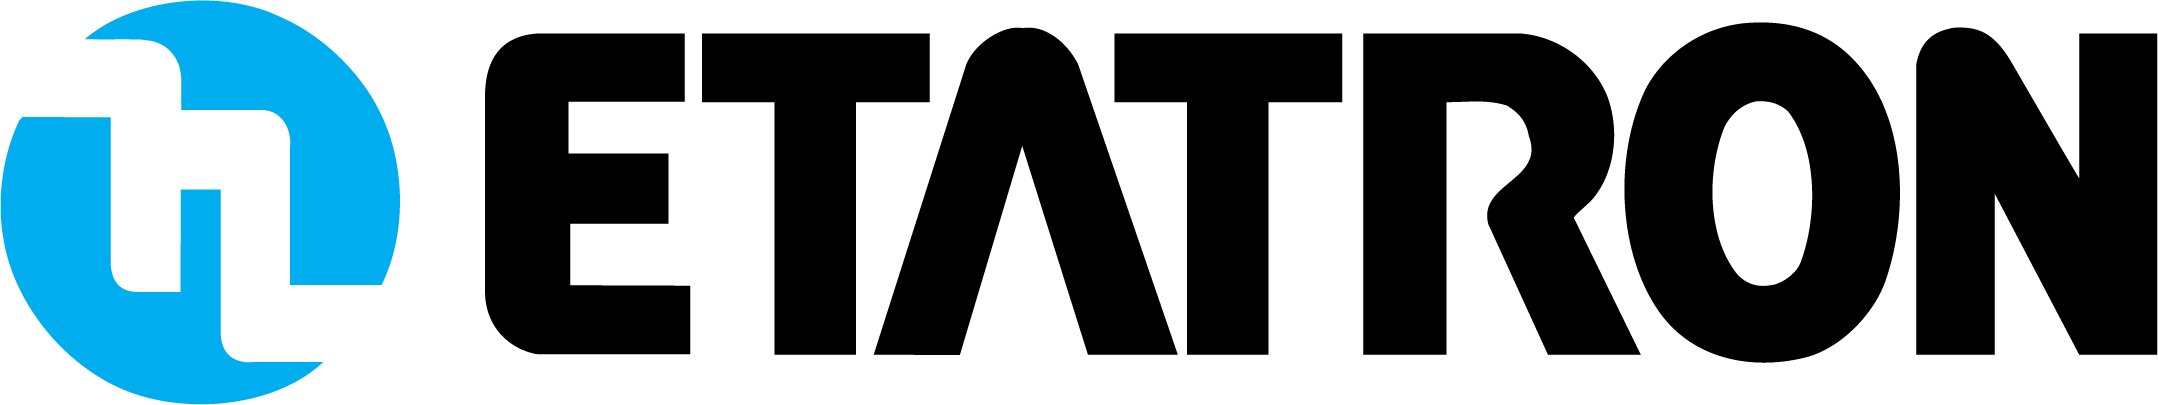 Etatron-Logo-1